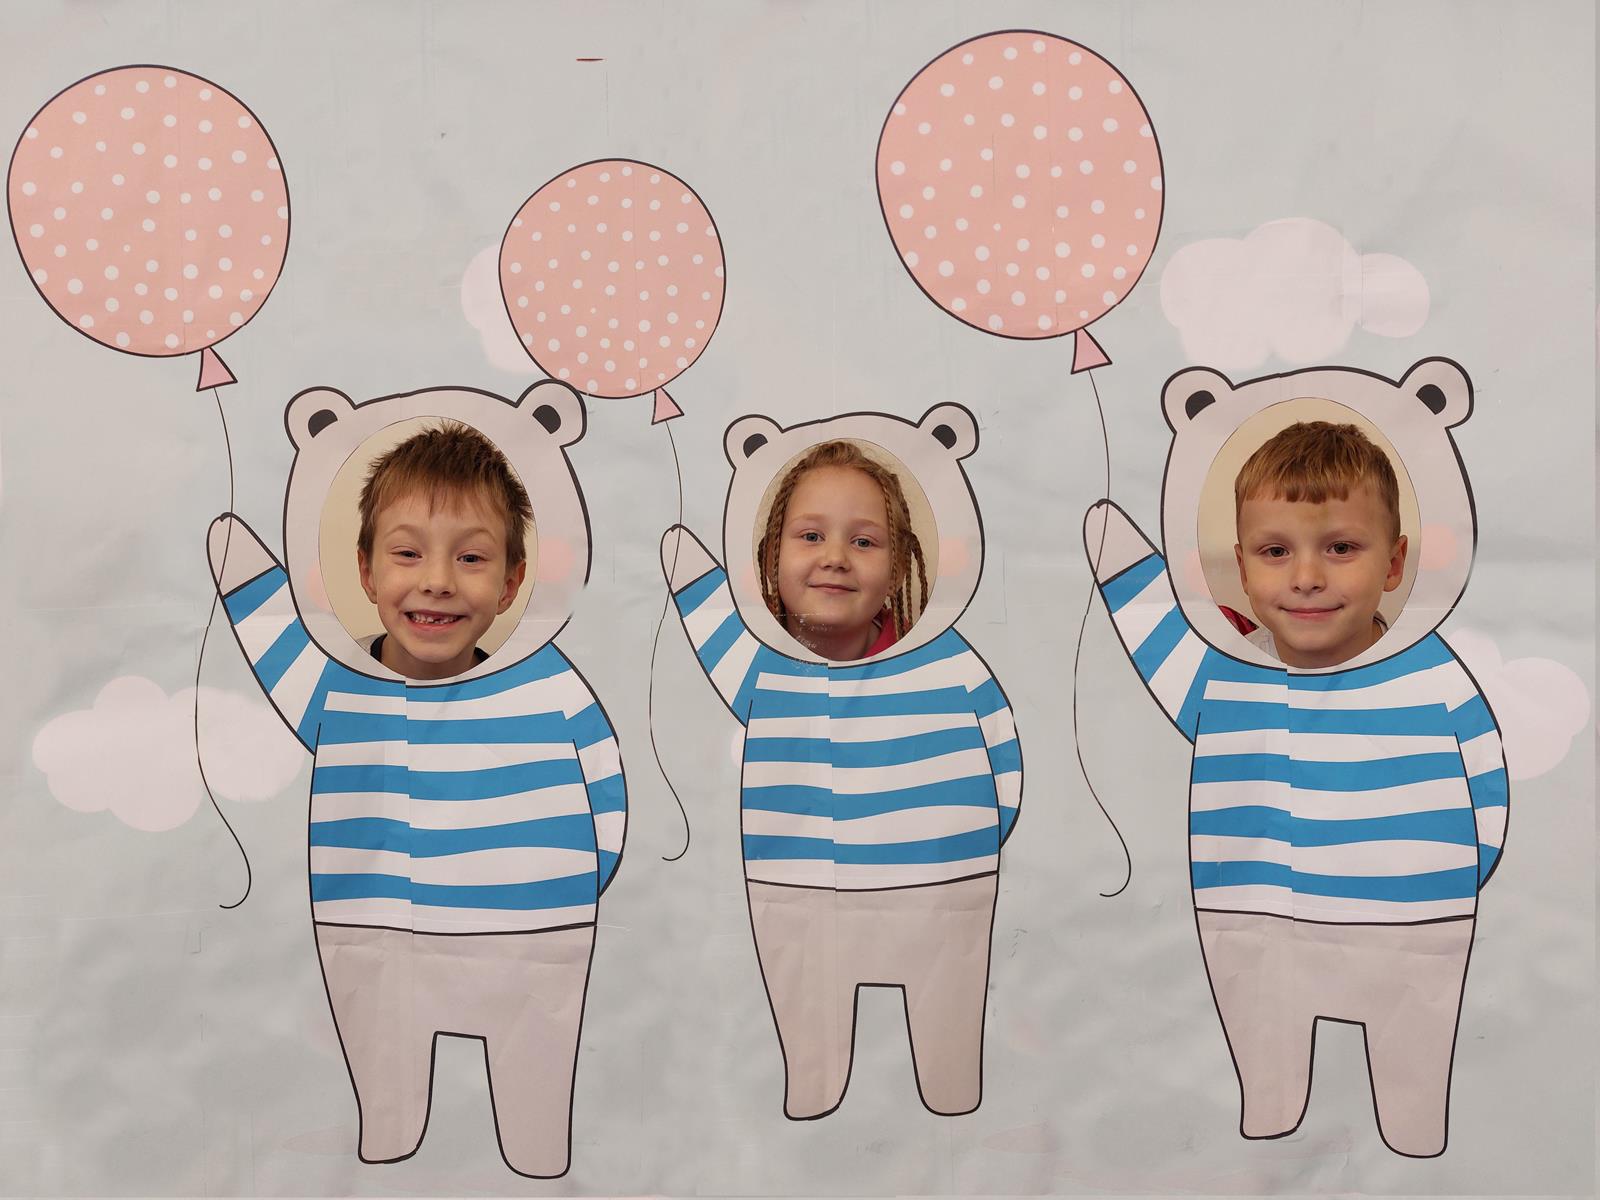 Troje dzieci pozuje w fotobudce misiów, na dużym plakacie są narysowane misie, dzieci patrzą przez dziurę, widać tylko ich głowy.